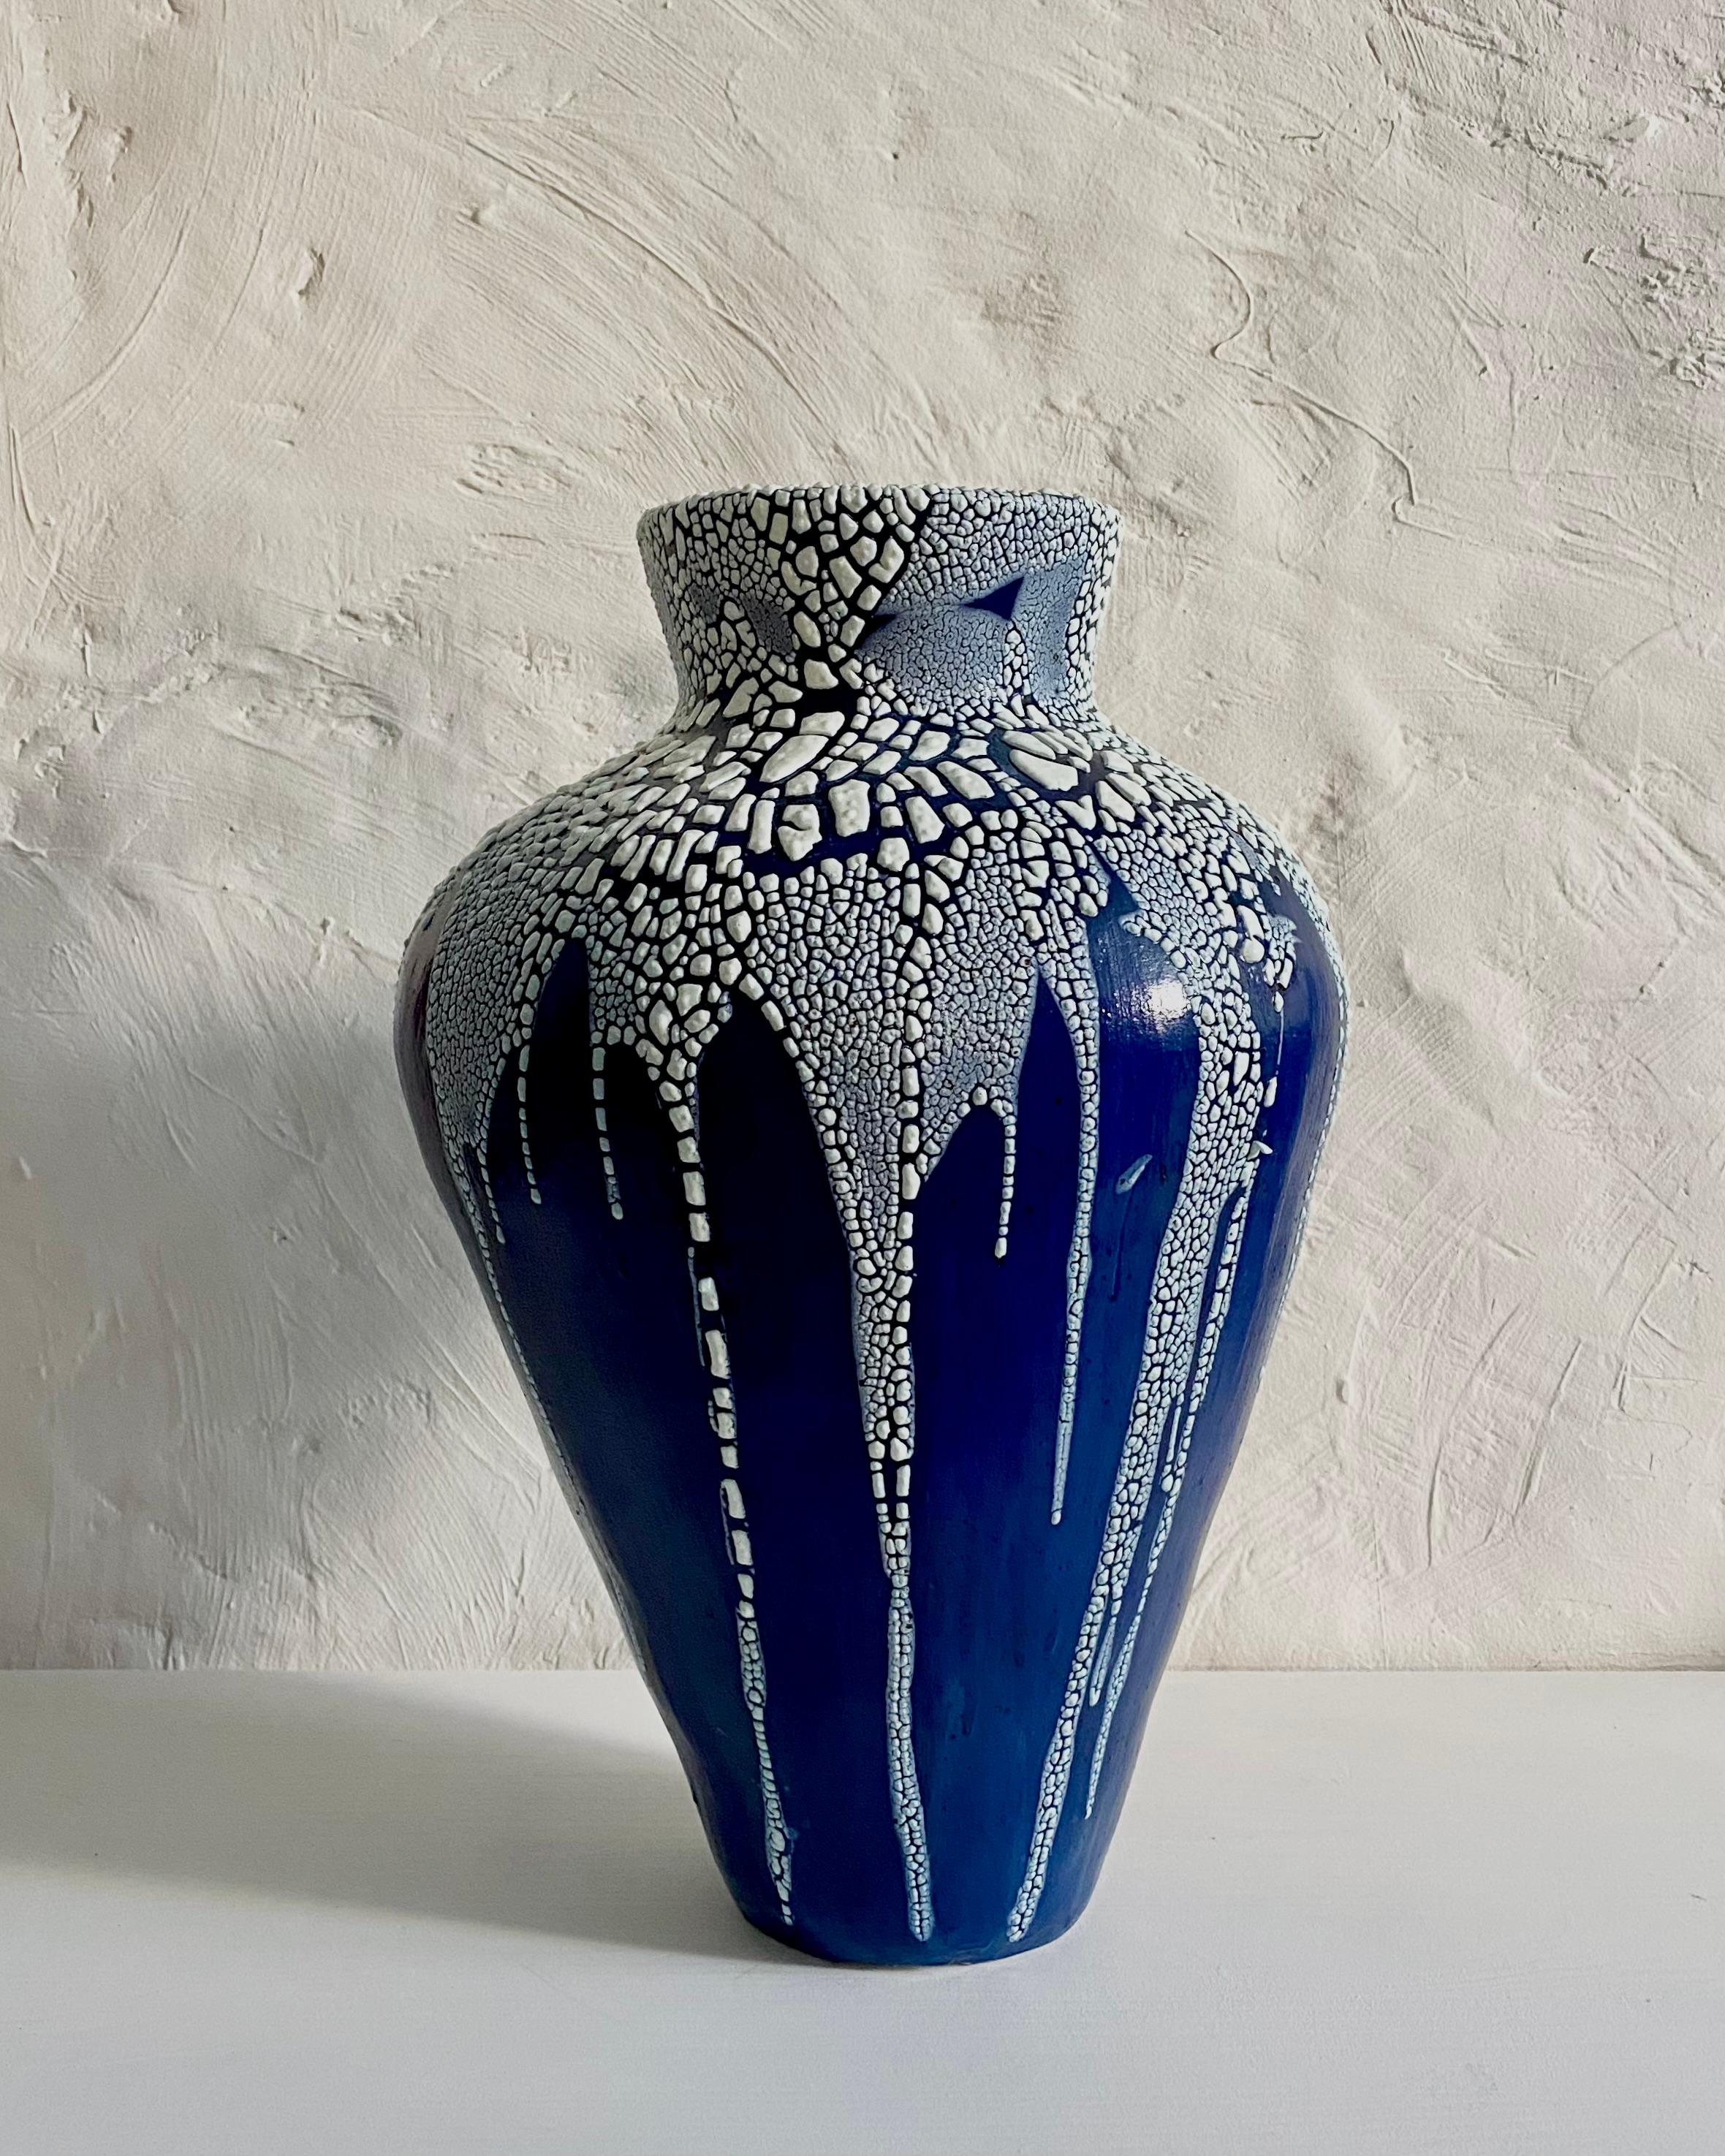 Tropfende Vase von Astrid Öhman
Handgefertigt
Abmessungen: D 24 x H 40 cm
MATERIALIEN: Keramik, Steingut, von Hand modelliert, glasiert und bei hoher Temperatur gebrannt.

Keramiken von Astrid Öhman. Jedes Stück ist handgefertigt und einzigartig.